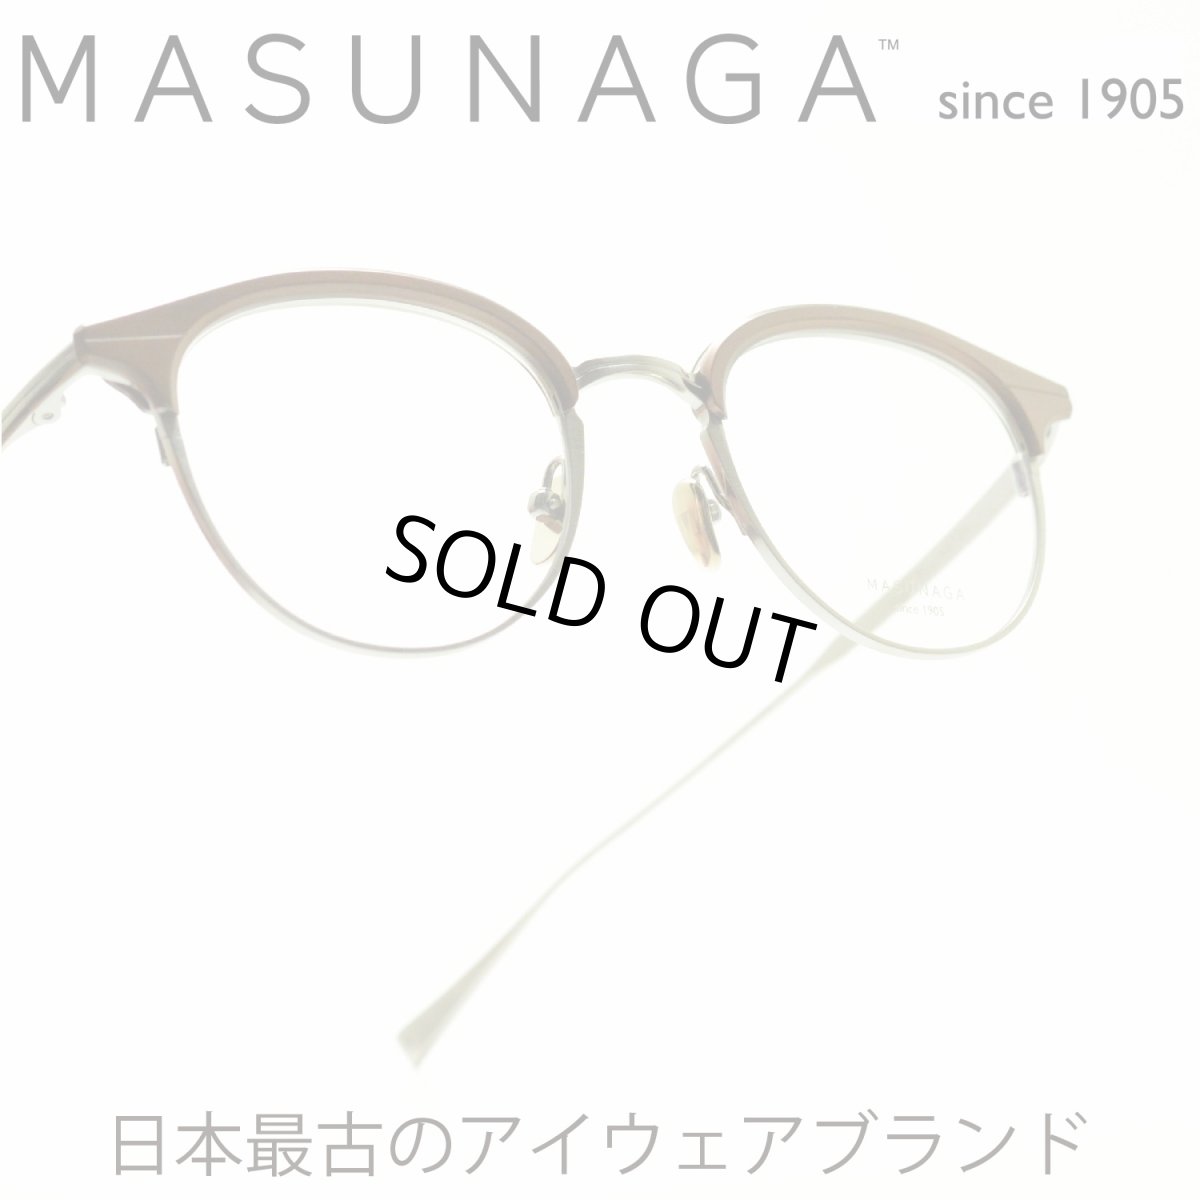 画像1: 増永眼鏡 MASUNAGA since 1905 ELLINGTON col-13 BROWN/GRY メガネ 眼鏡 めがね メンズ レディース おしゃれ ブランド 人気 おすすめ フレーム 流行り 度付き レンズ (1)